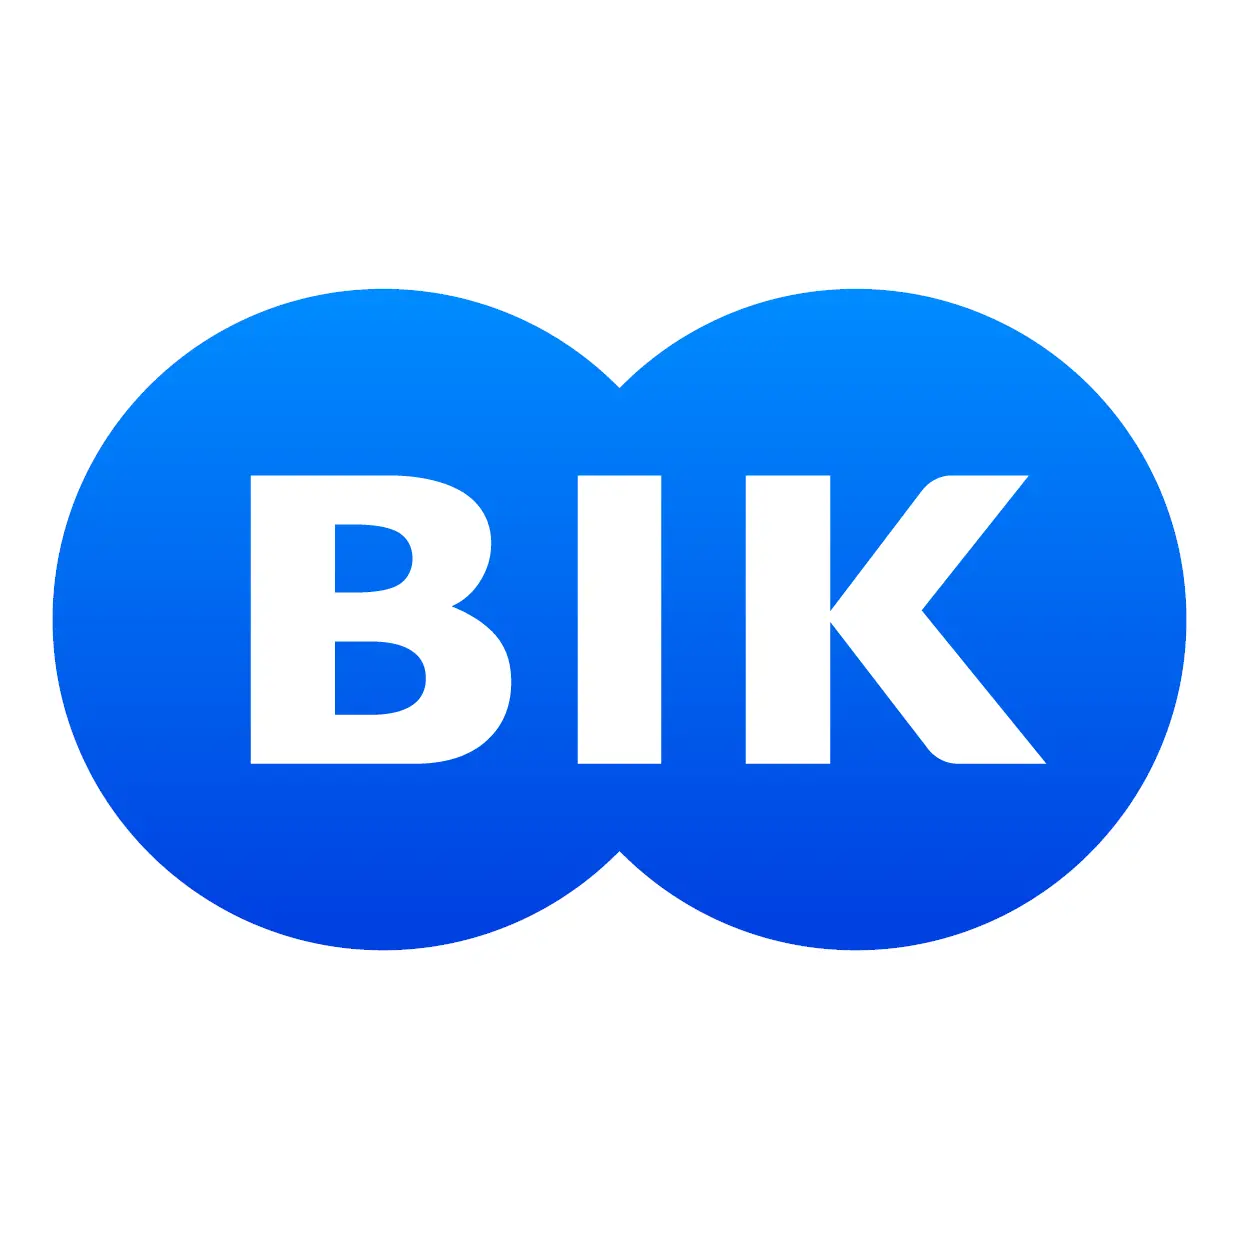 BIK - Biuro Informacji Kredytowej